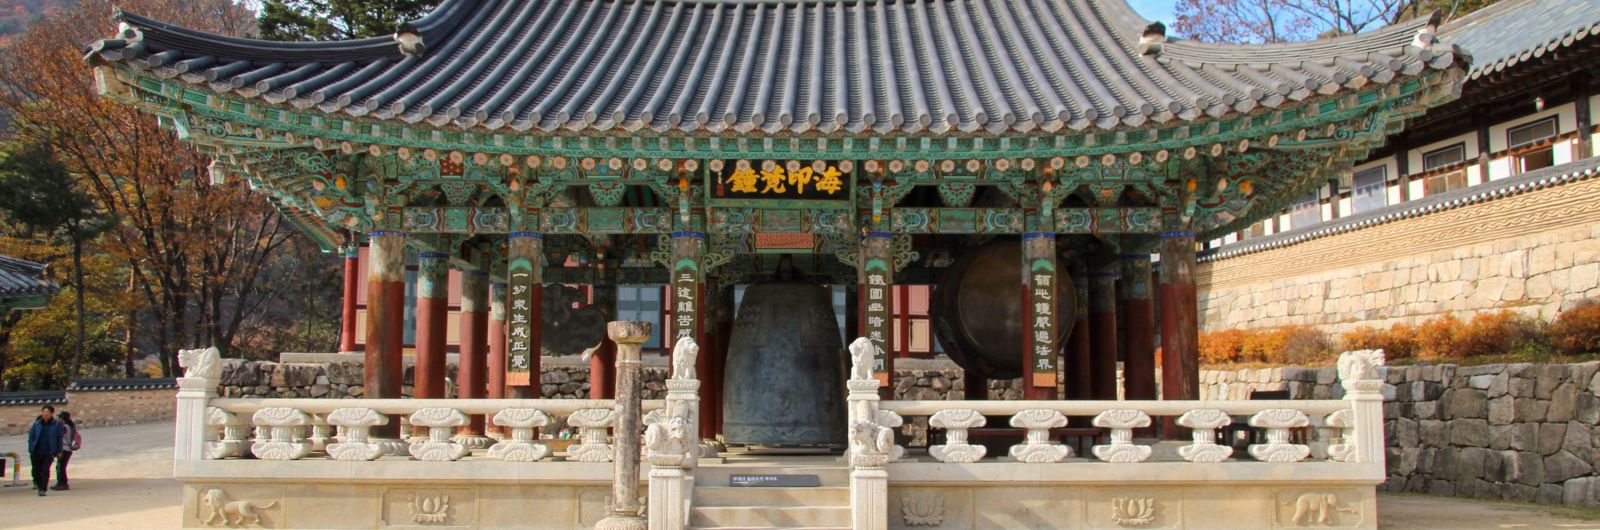 templo haeinsa corea del sur